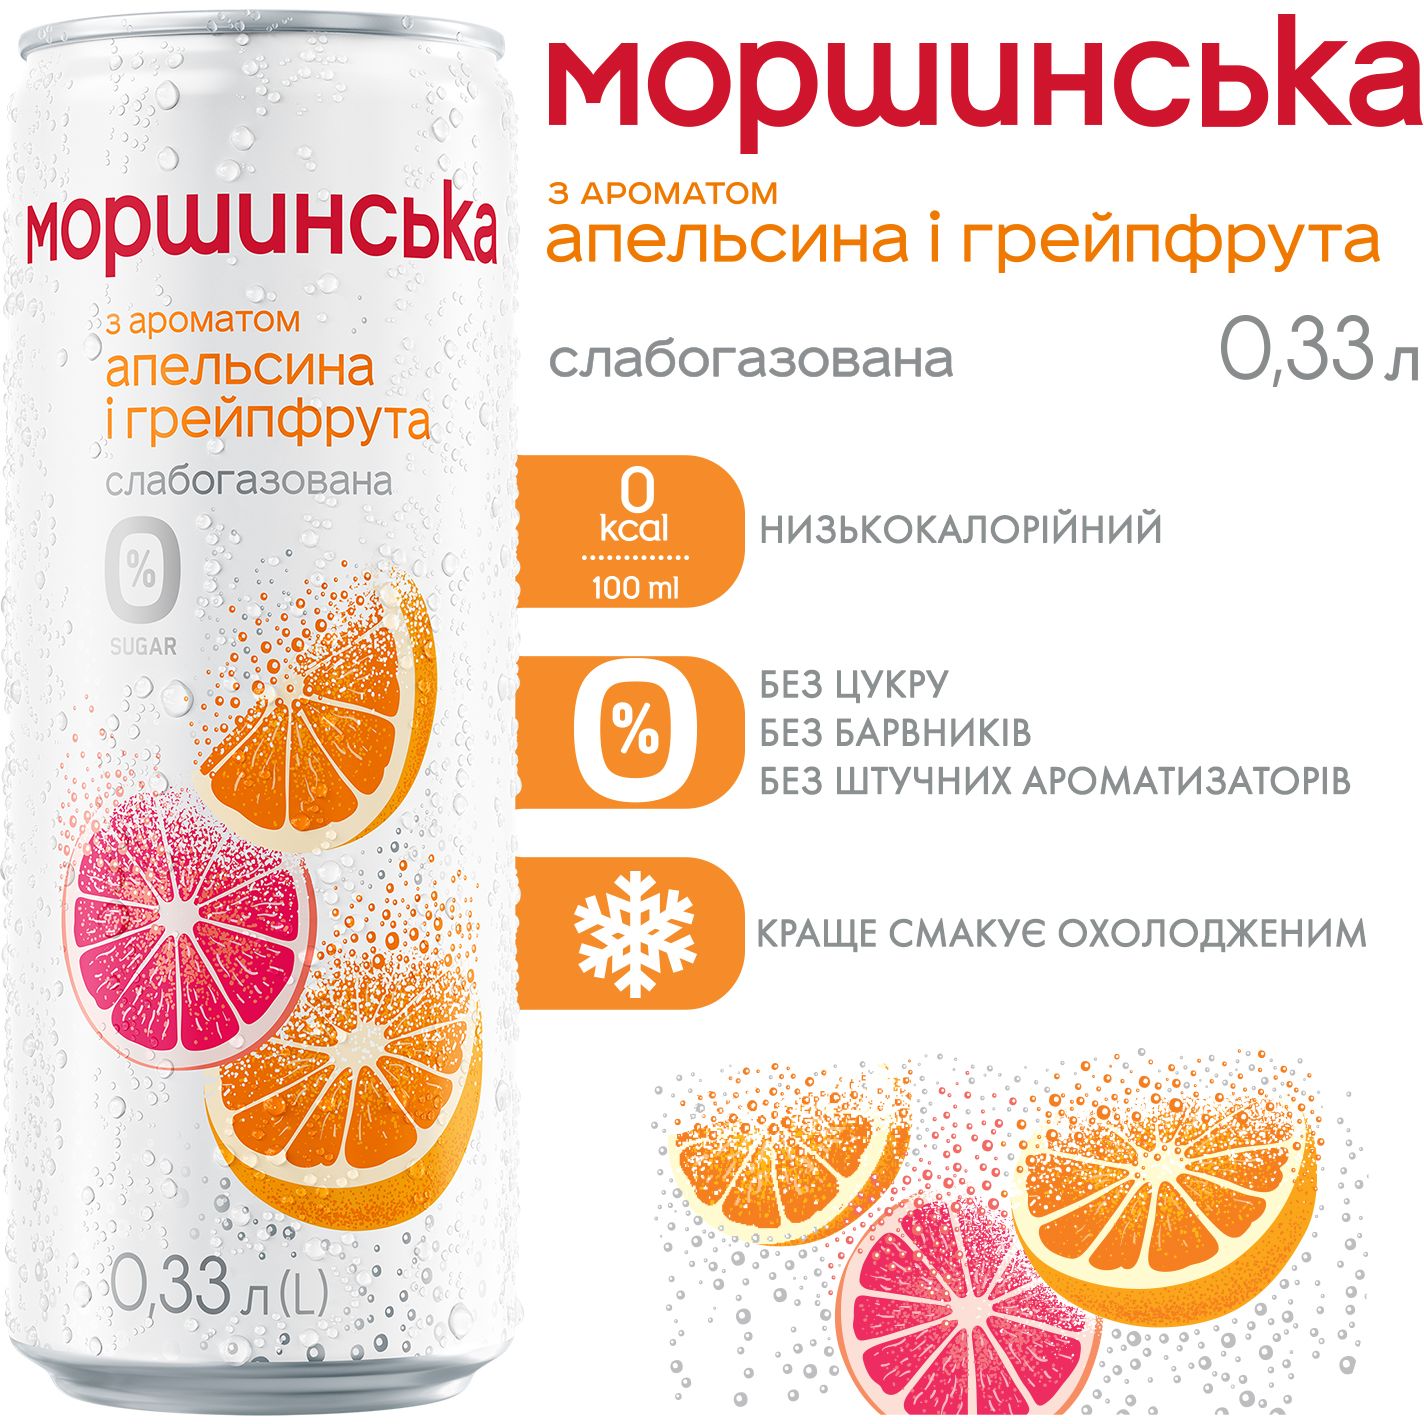 Напиток Моршинская с ароматом апельсина и грейпфрута слабогазированный 0.33 л - фото 3